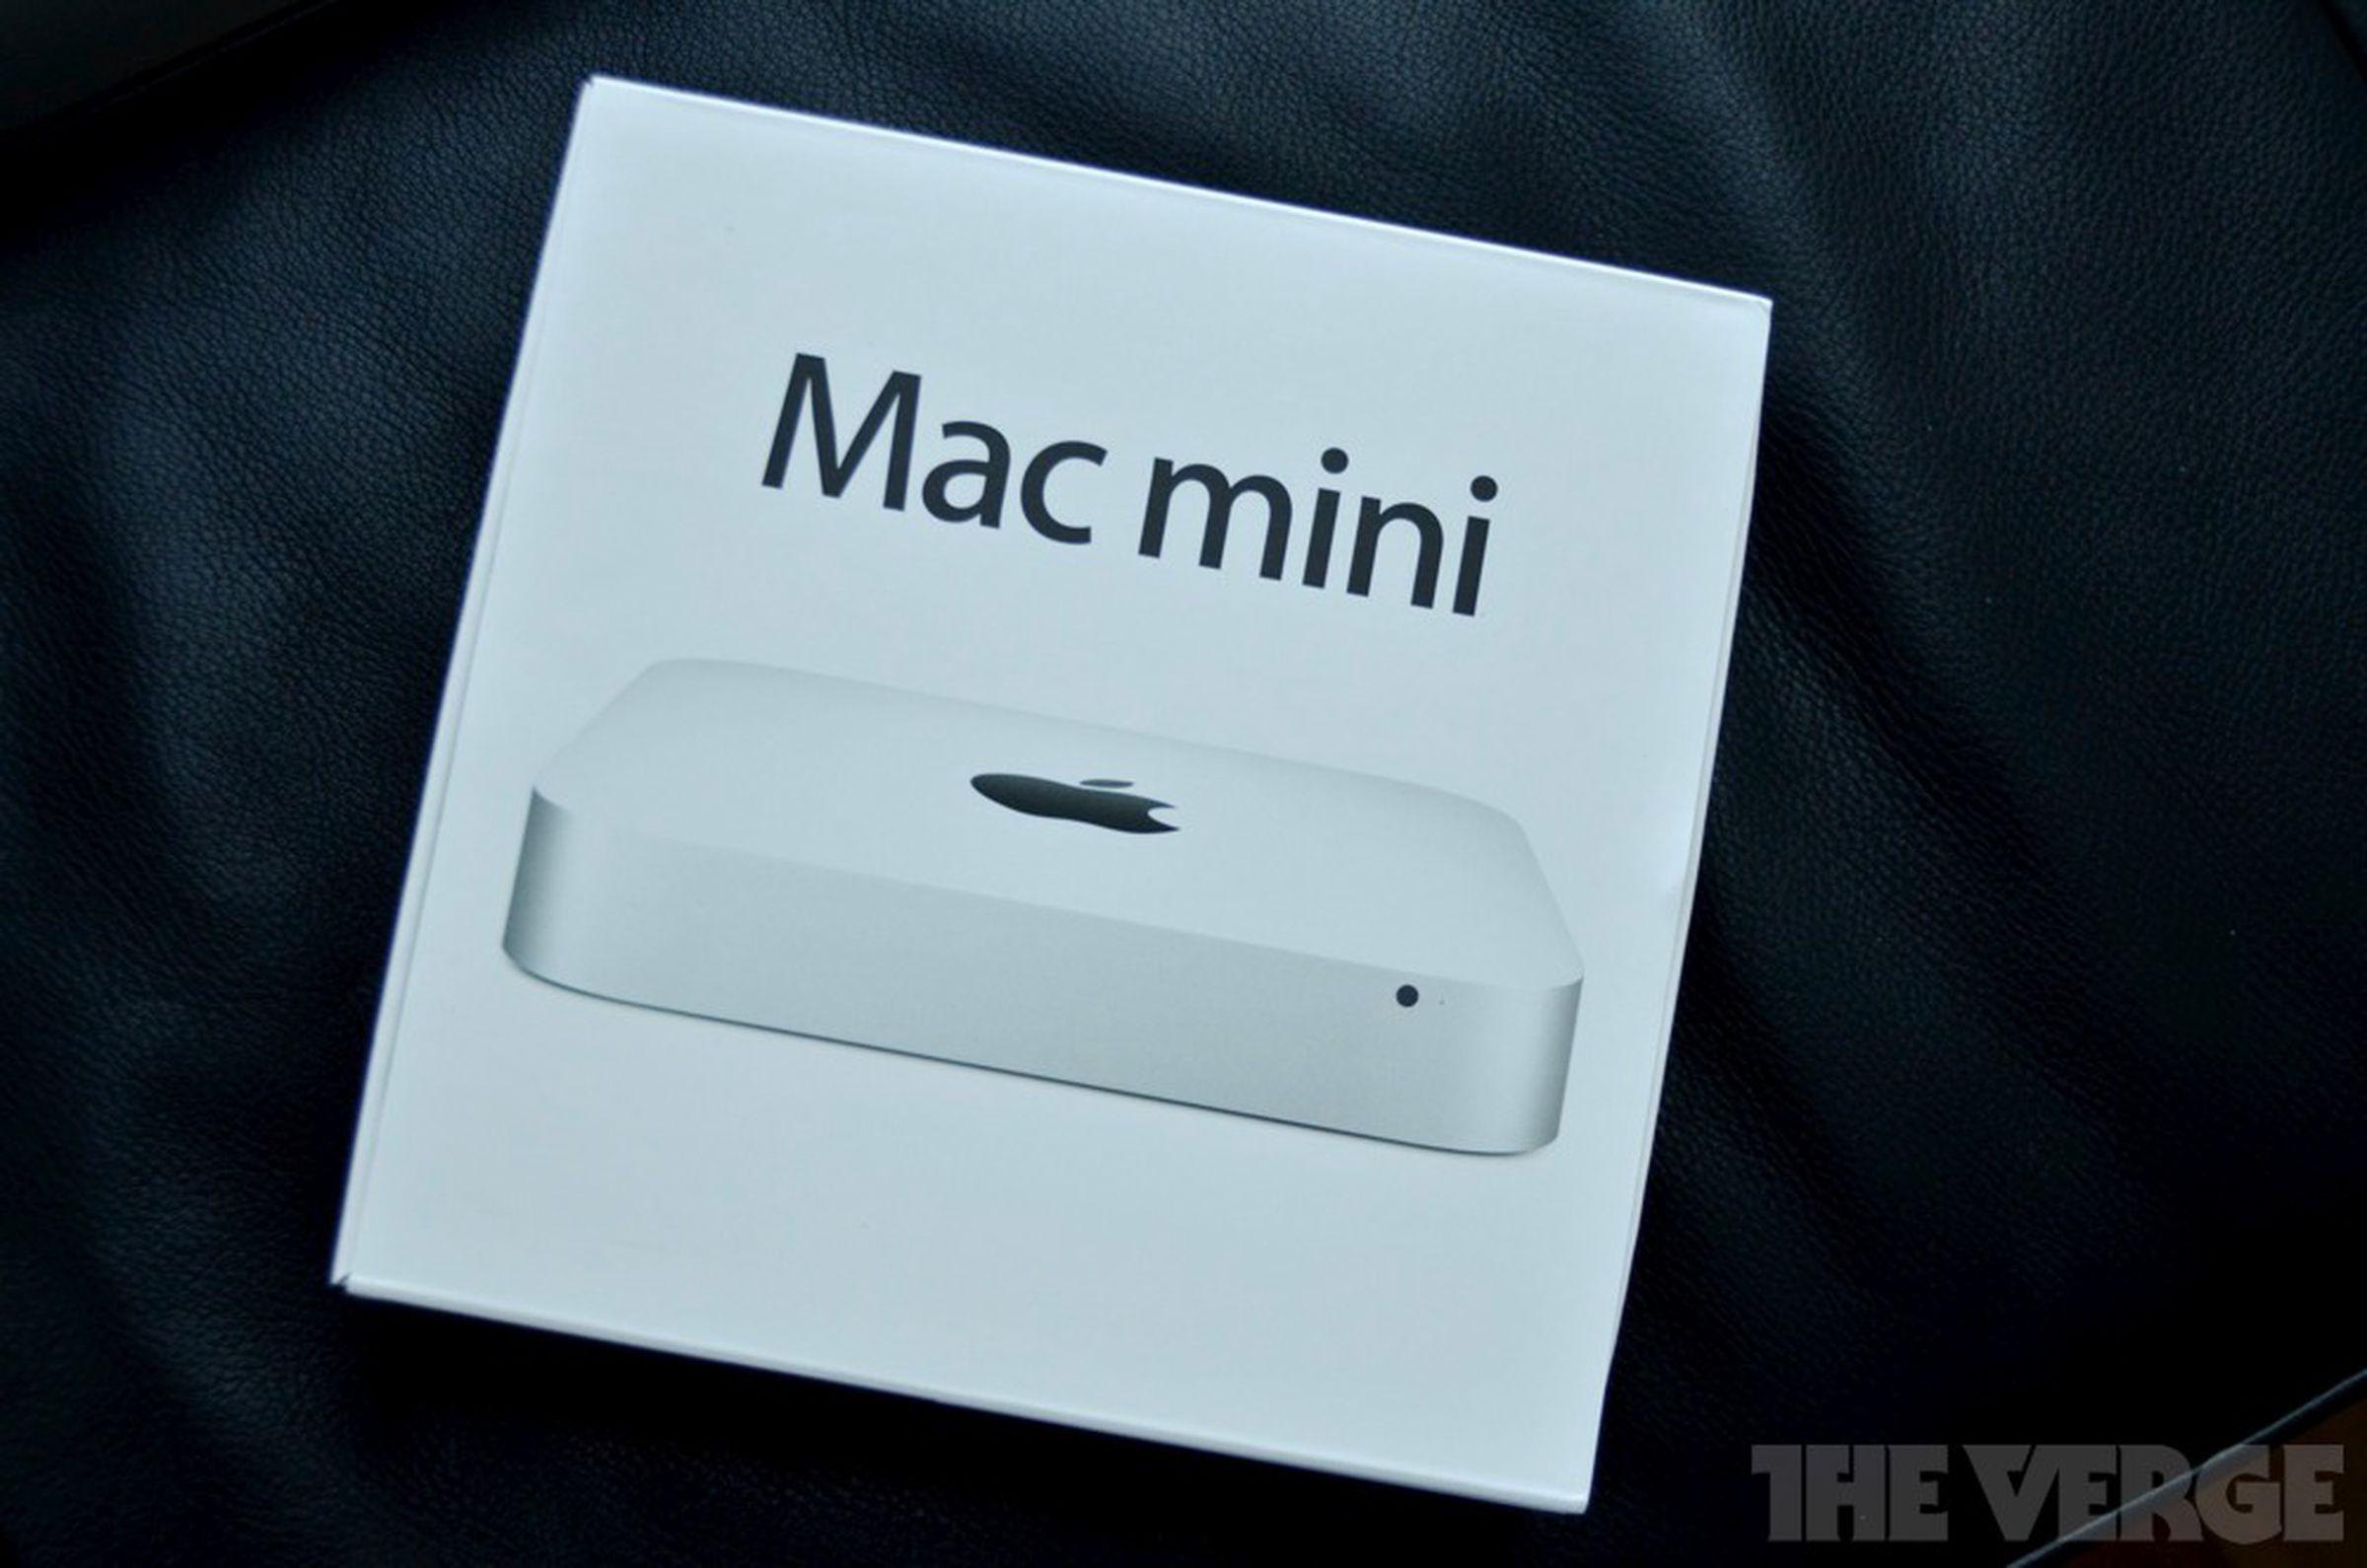 Mac mini (mid 2011) review